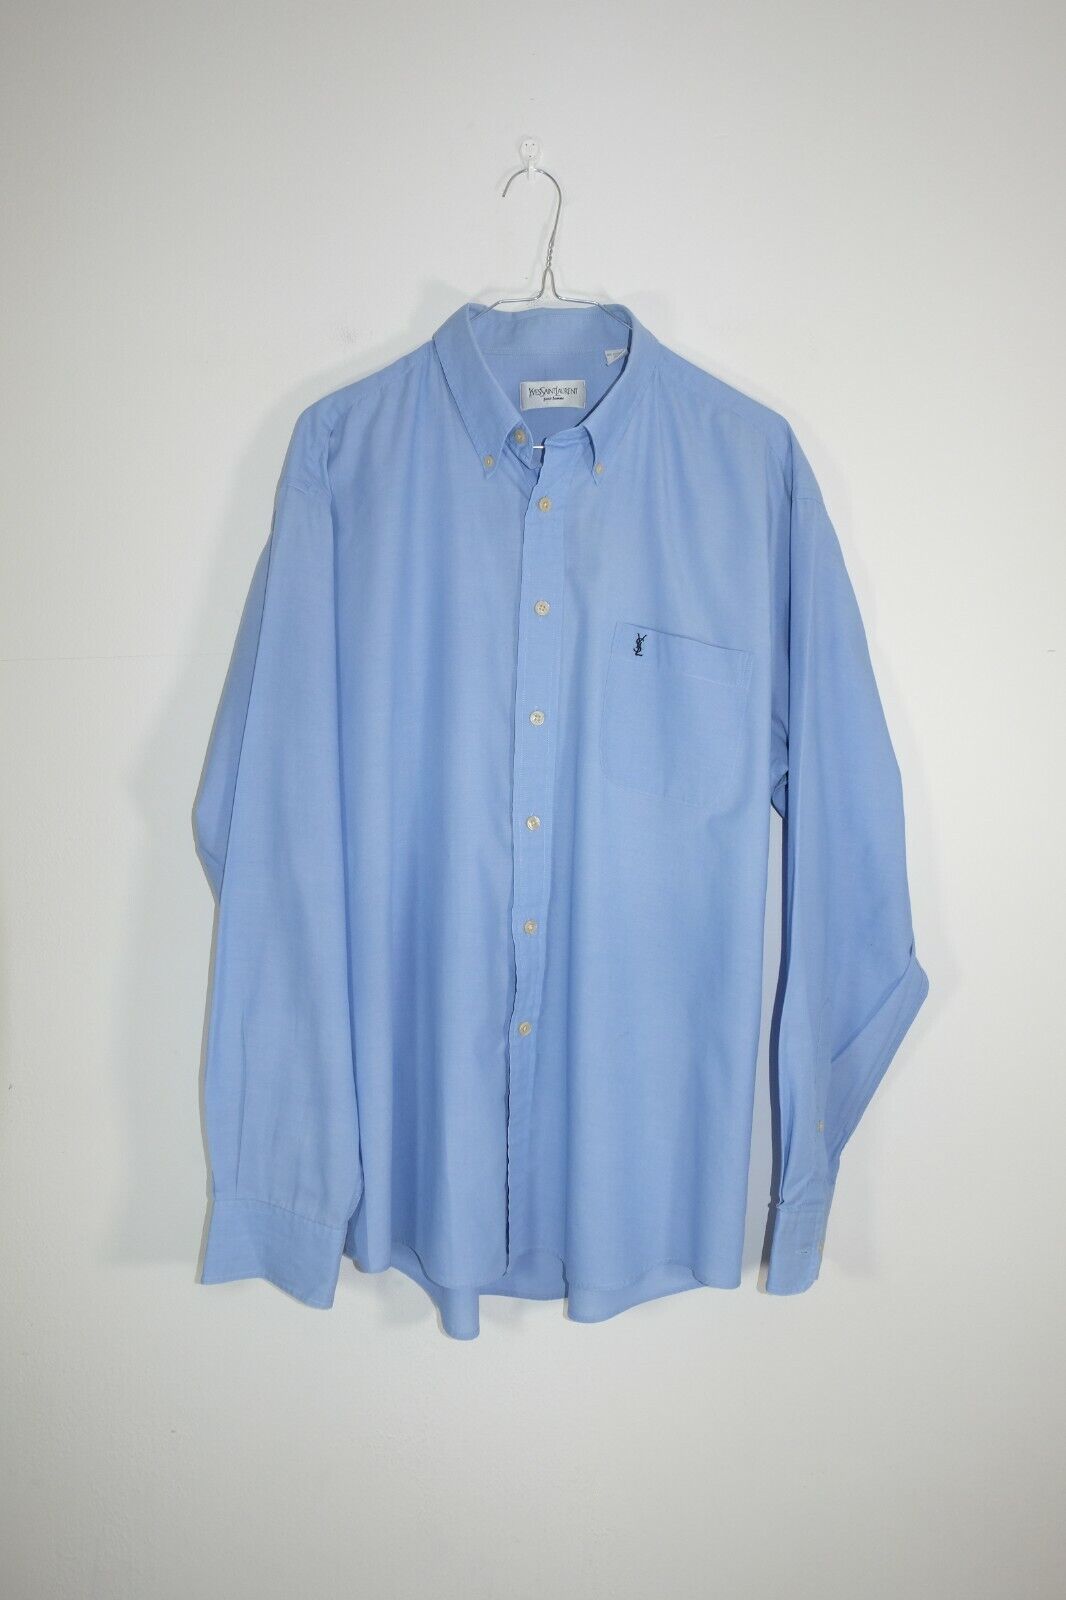 YSL Pour Homme Blue Regular Fit Shirt Size L Yves Saint Laurent | eBay